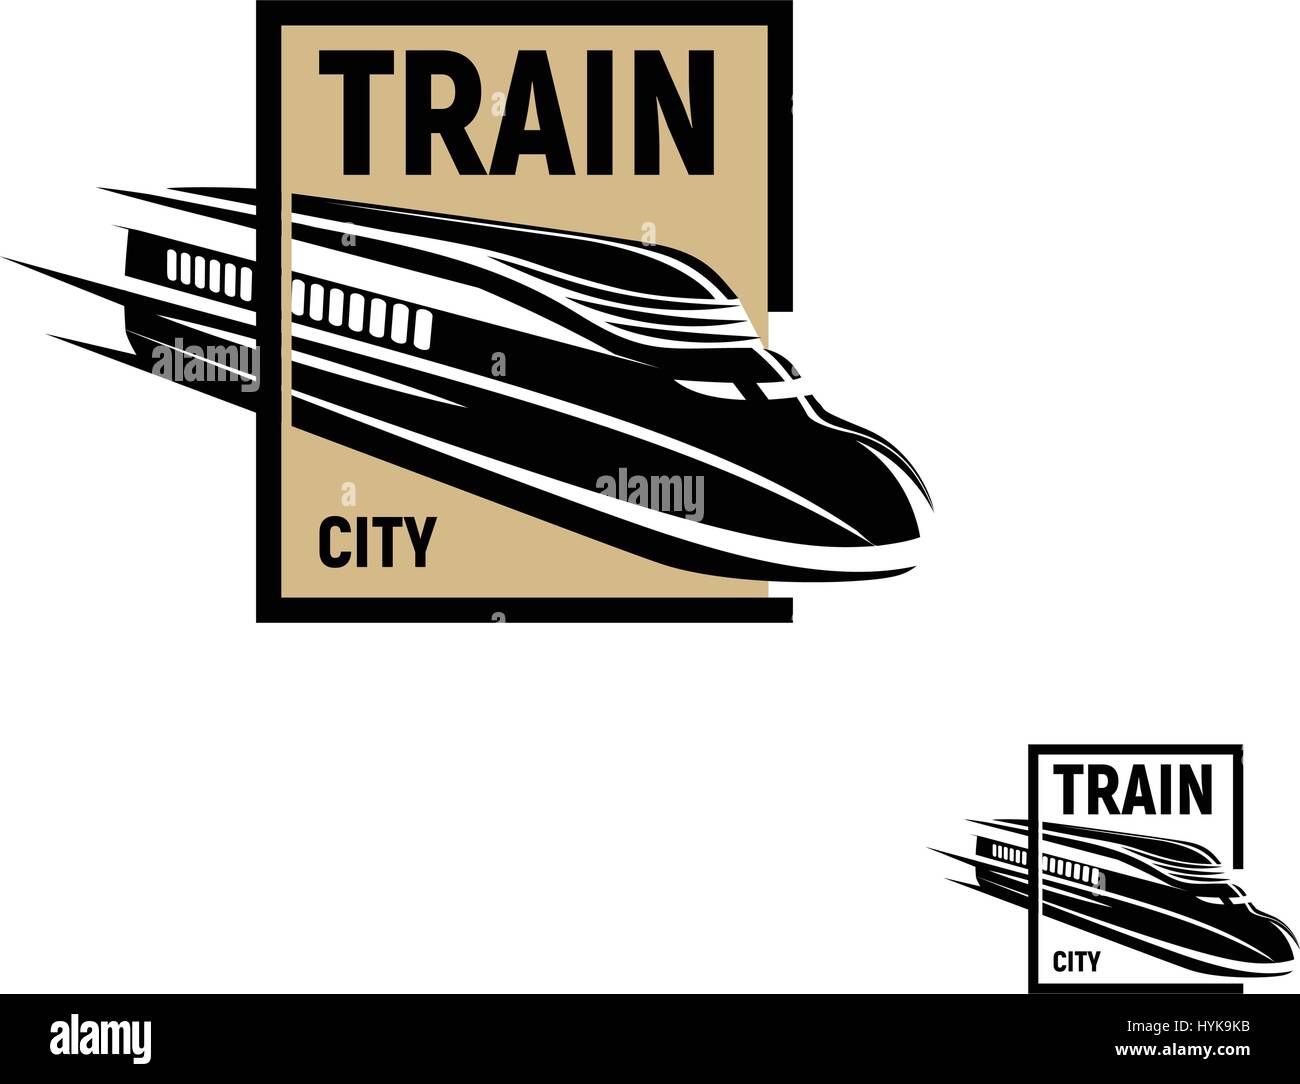 La couleur noire résumé isolés dans brown square logo sur fond blanc, monochrome transport ferroviaire moderne logotype, élément de fer dans leur gravure vector illustration Illustration de Vecteur